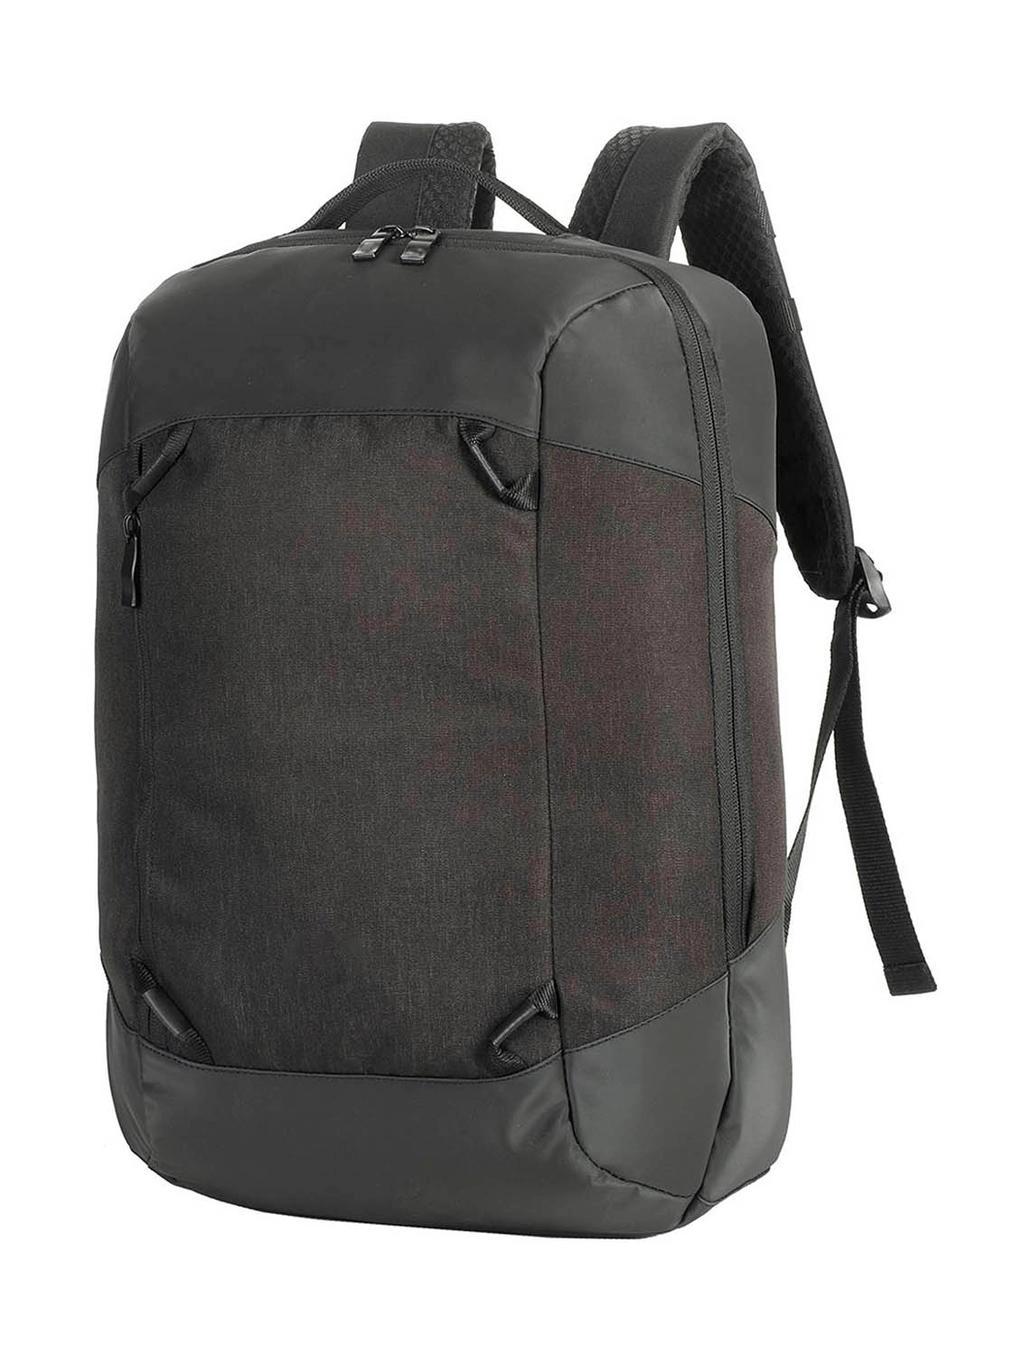 Luxembourg Vital Laptop Backpack zum Besticken und Bedrucken in der Farbe Black Melange mit Ihren Logo, Schriftzug oder Motiv.